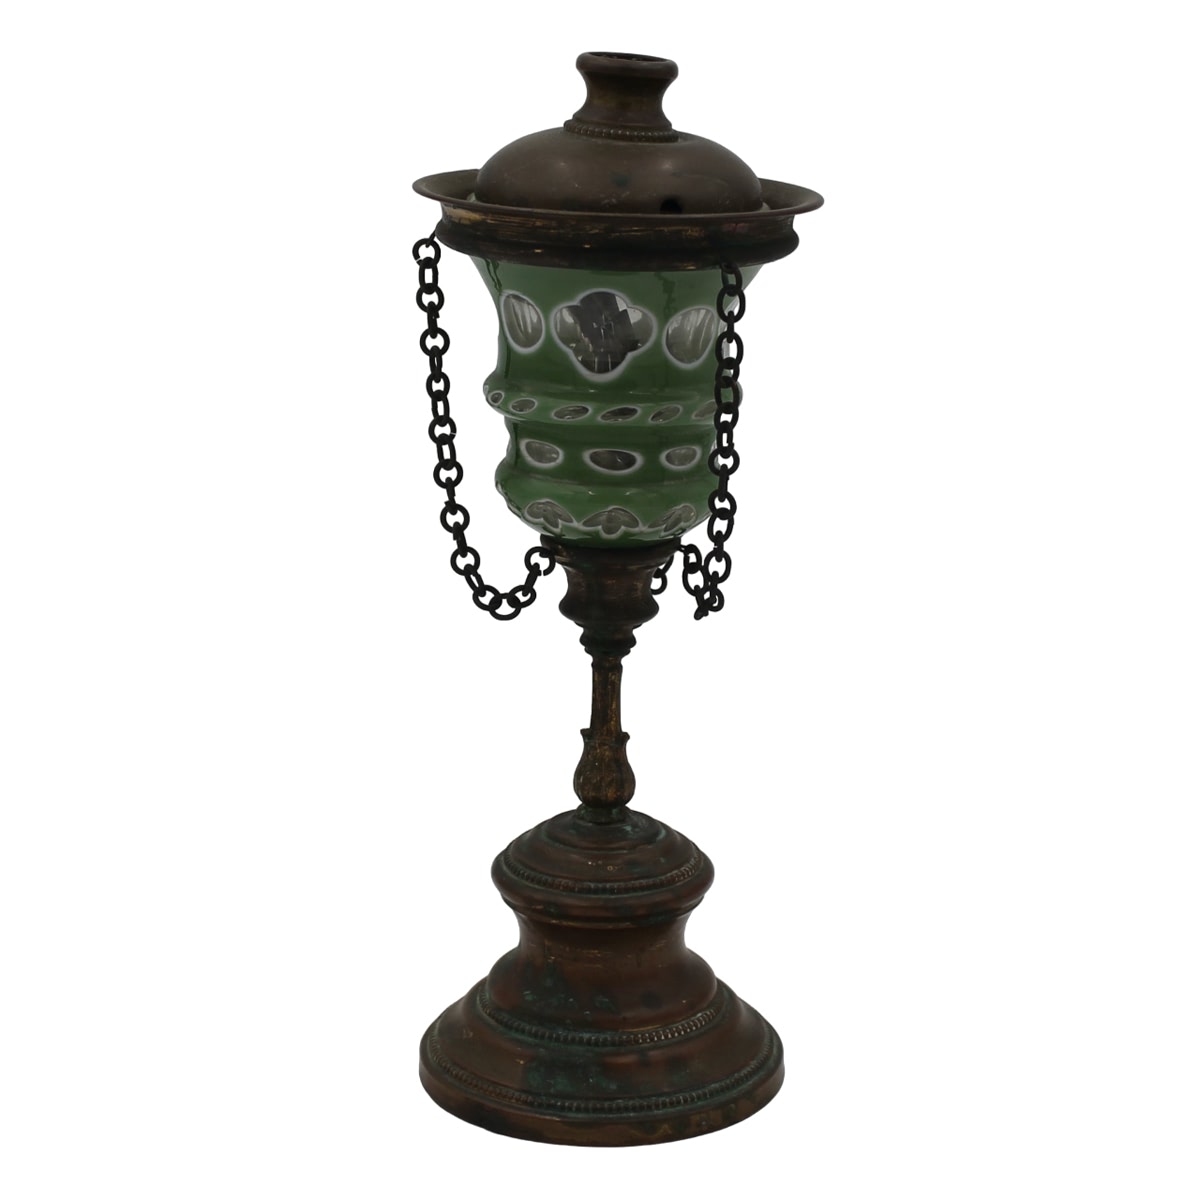 Piccola lampada votiva - Small votive lamp